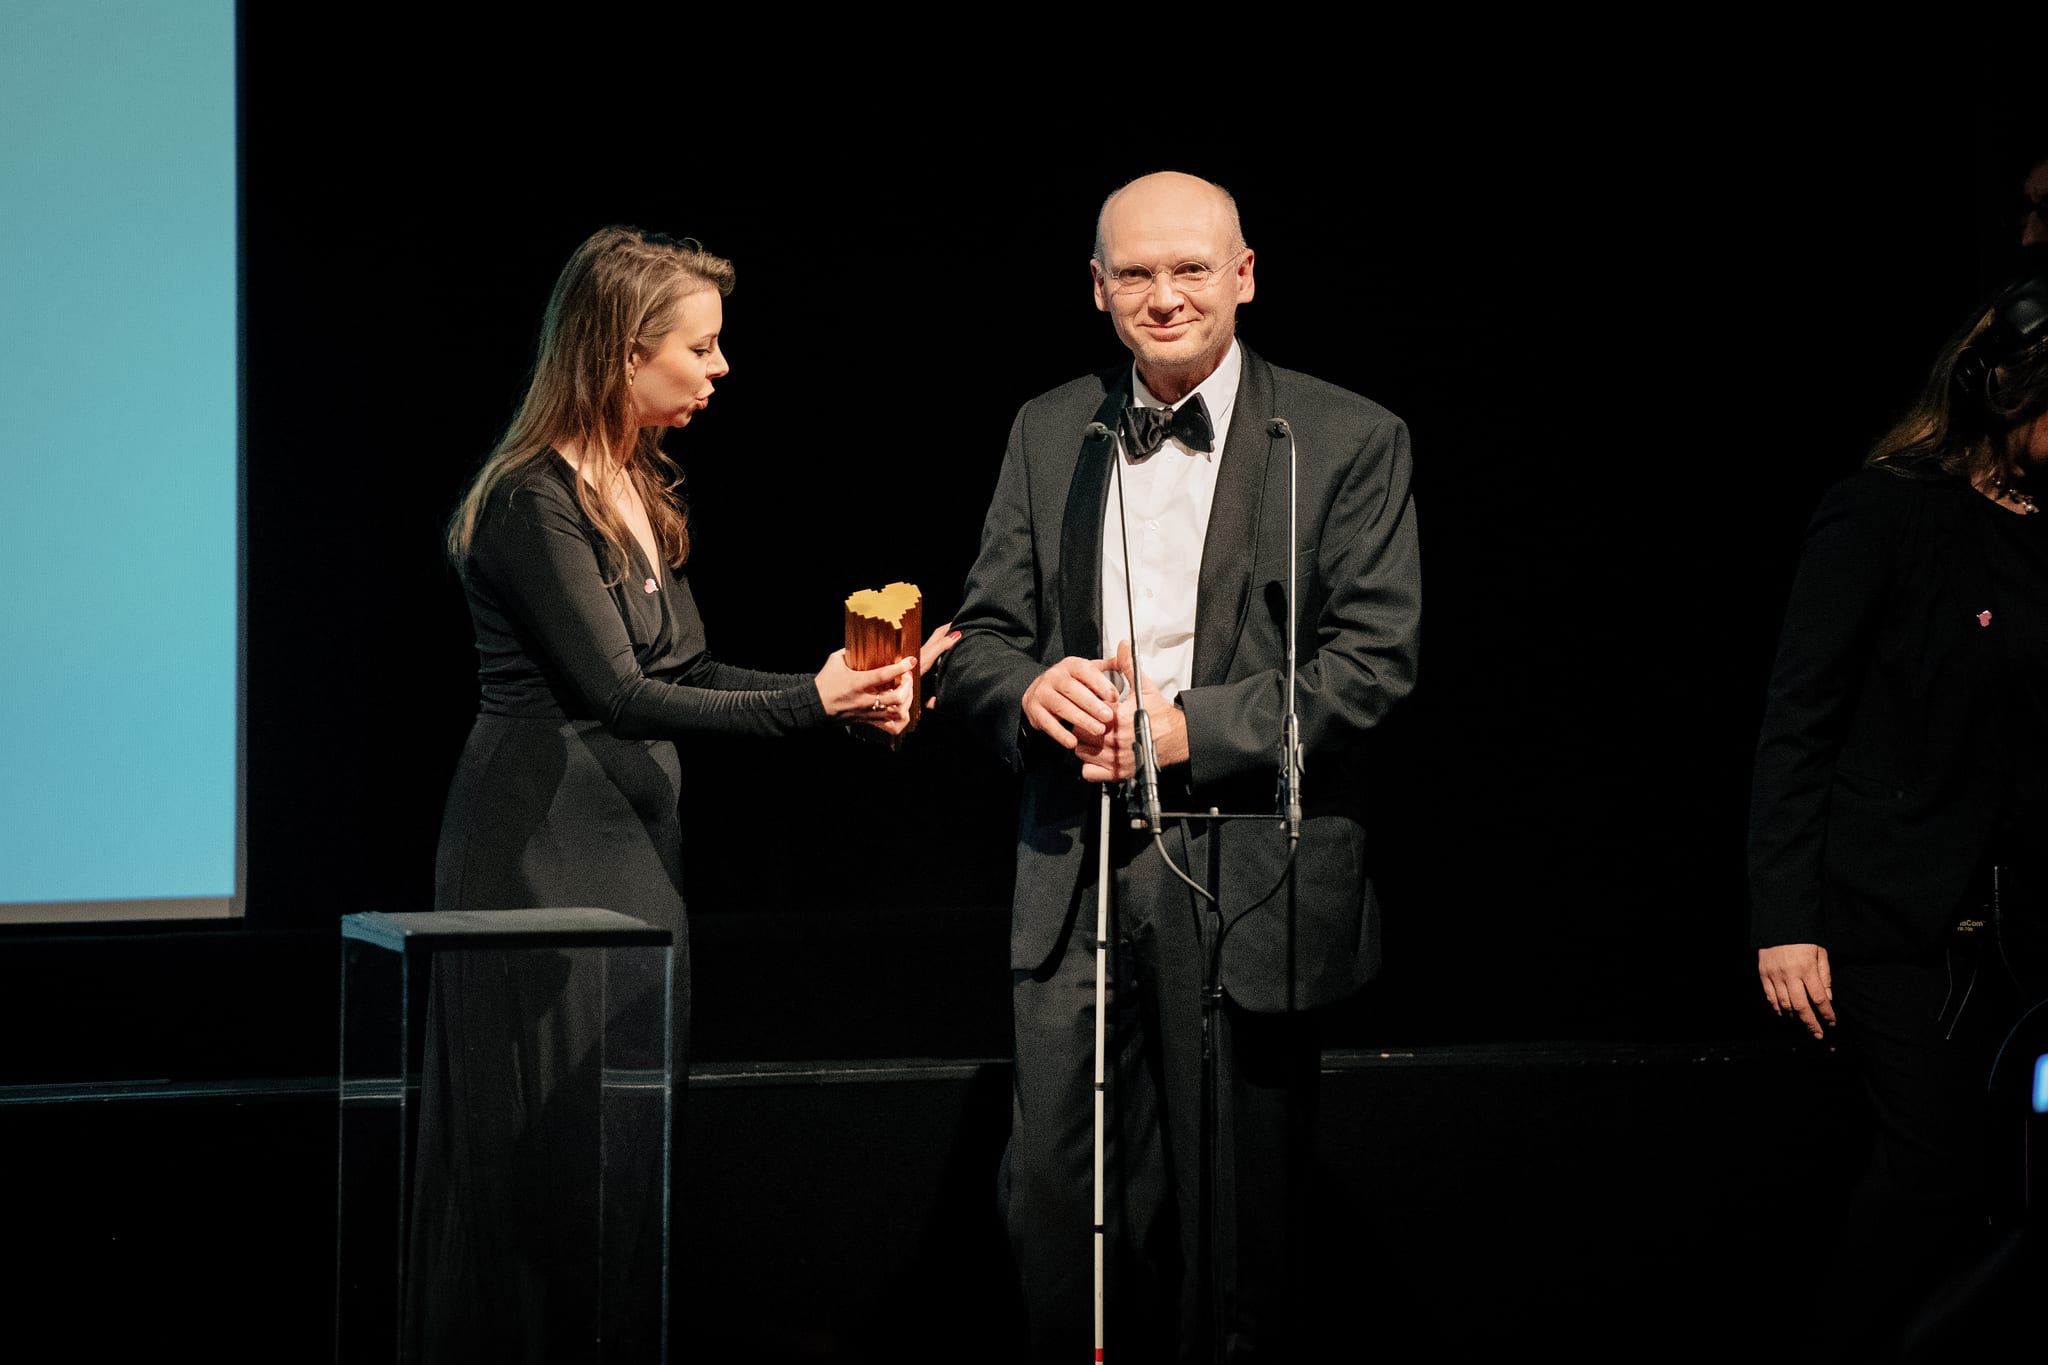 Hans Jørgen Wiberg at the 8th Annual Lovie Awards